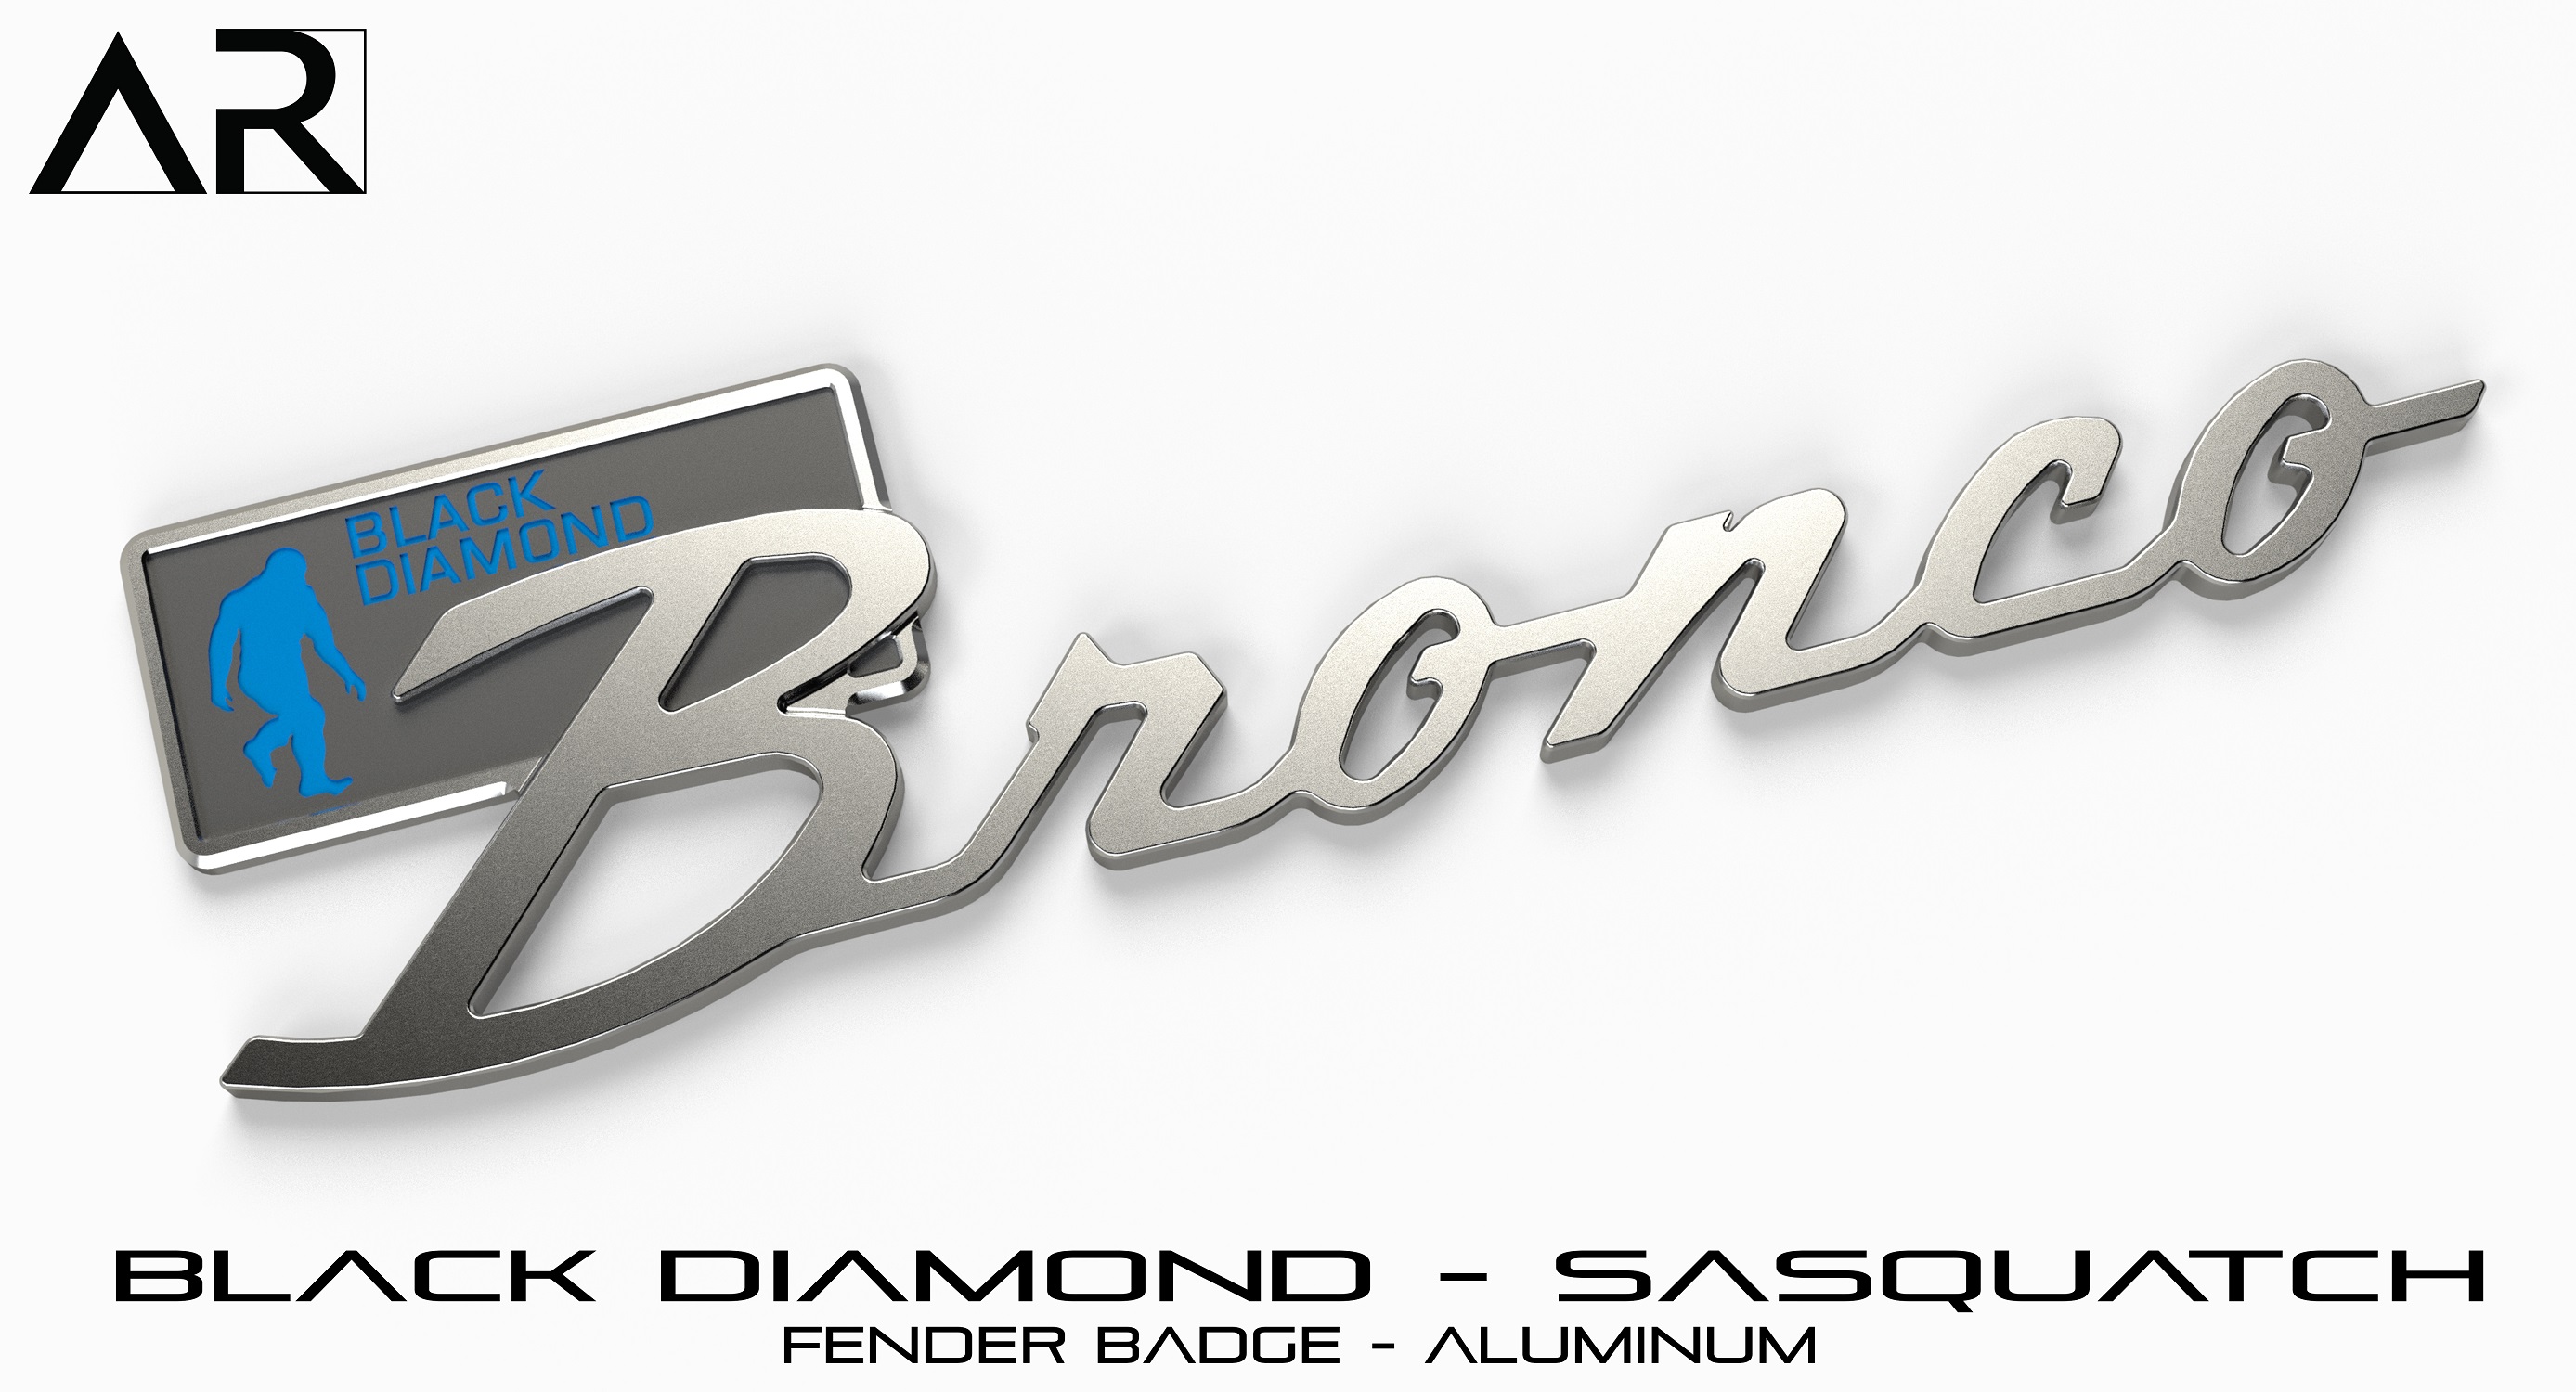 Ford Bronco AR | BRONCO CLASSIC DNA Fender Badge 1601008_S  - Fender Badge  - Black Diamond Sasquatch - Aluminum